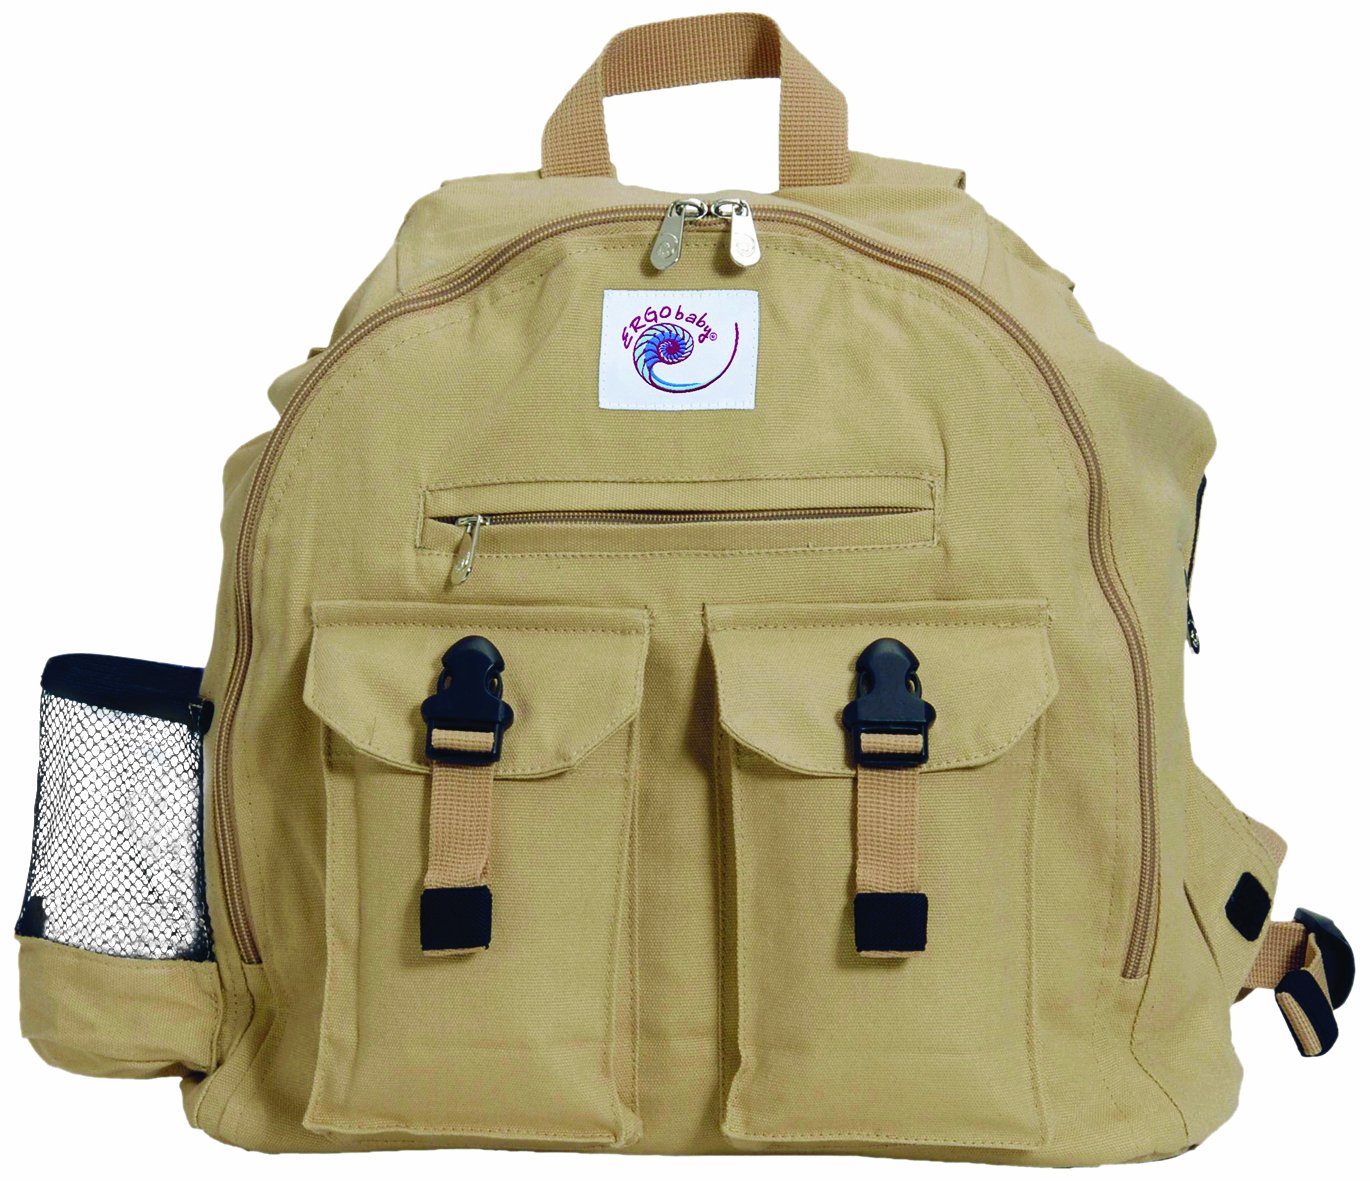 ERGObaby Backpack, Camel